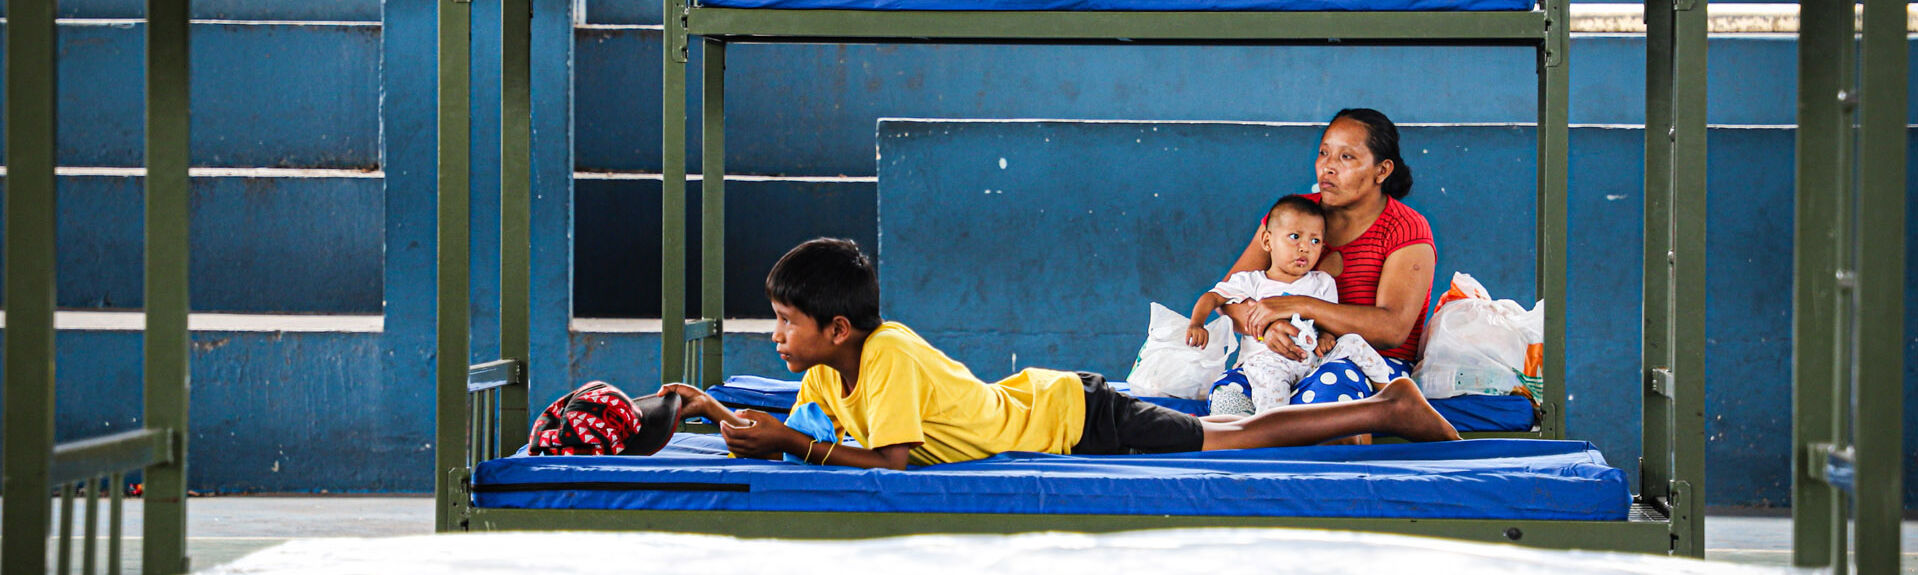 Brasilien Menschen auf Stockbetten in Turnhalle